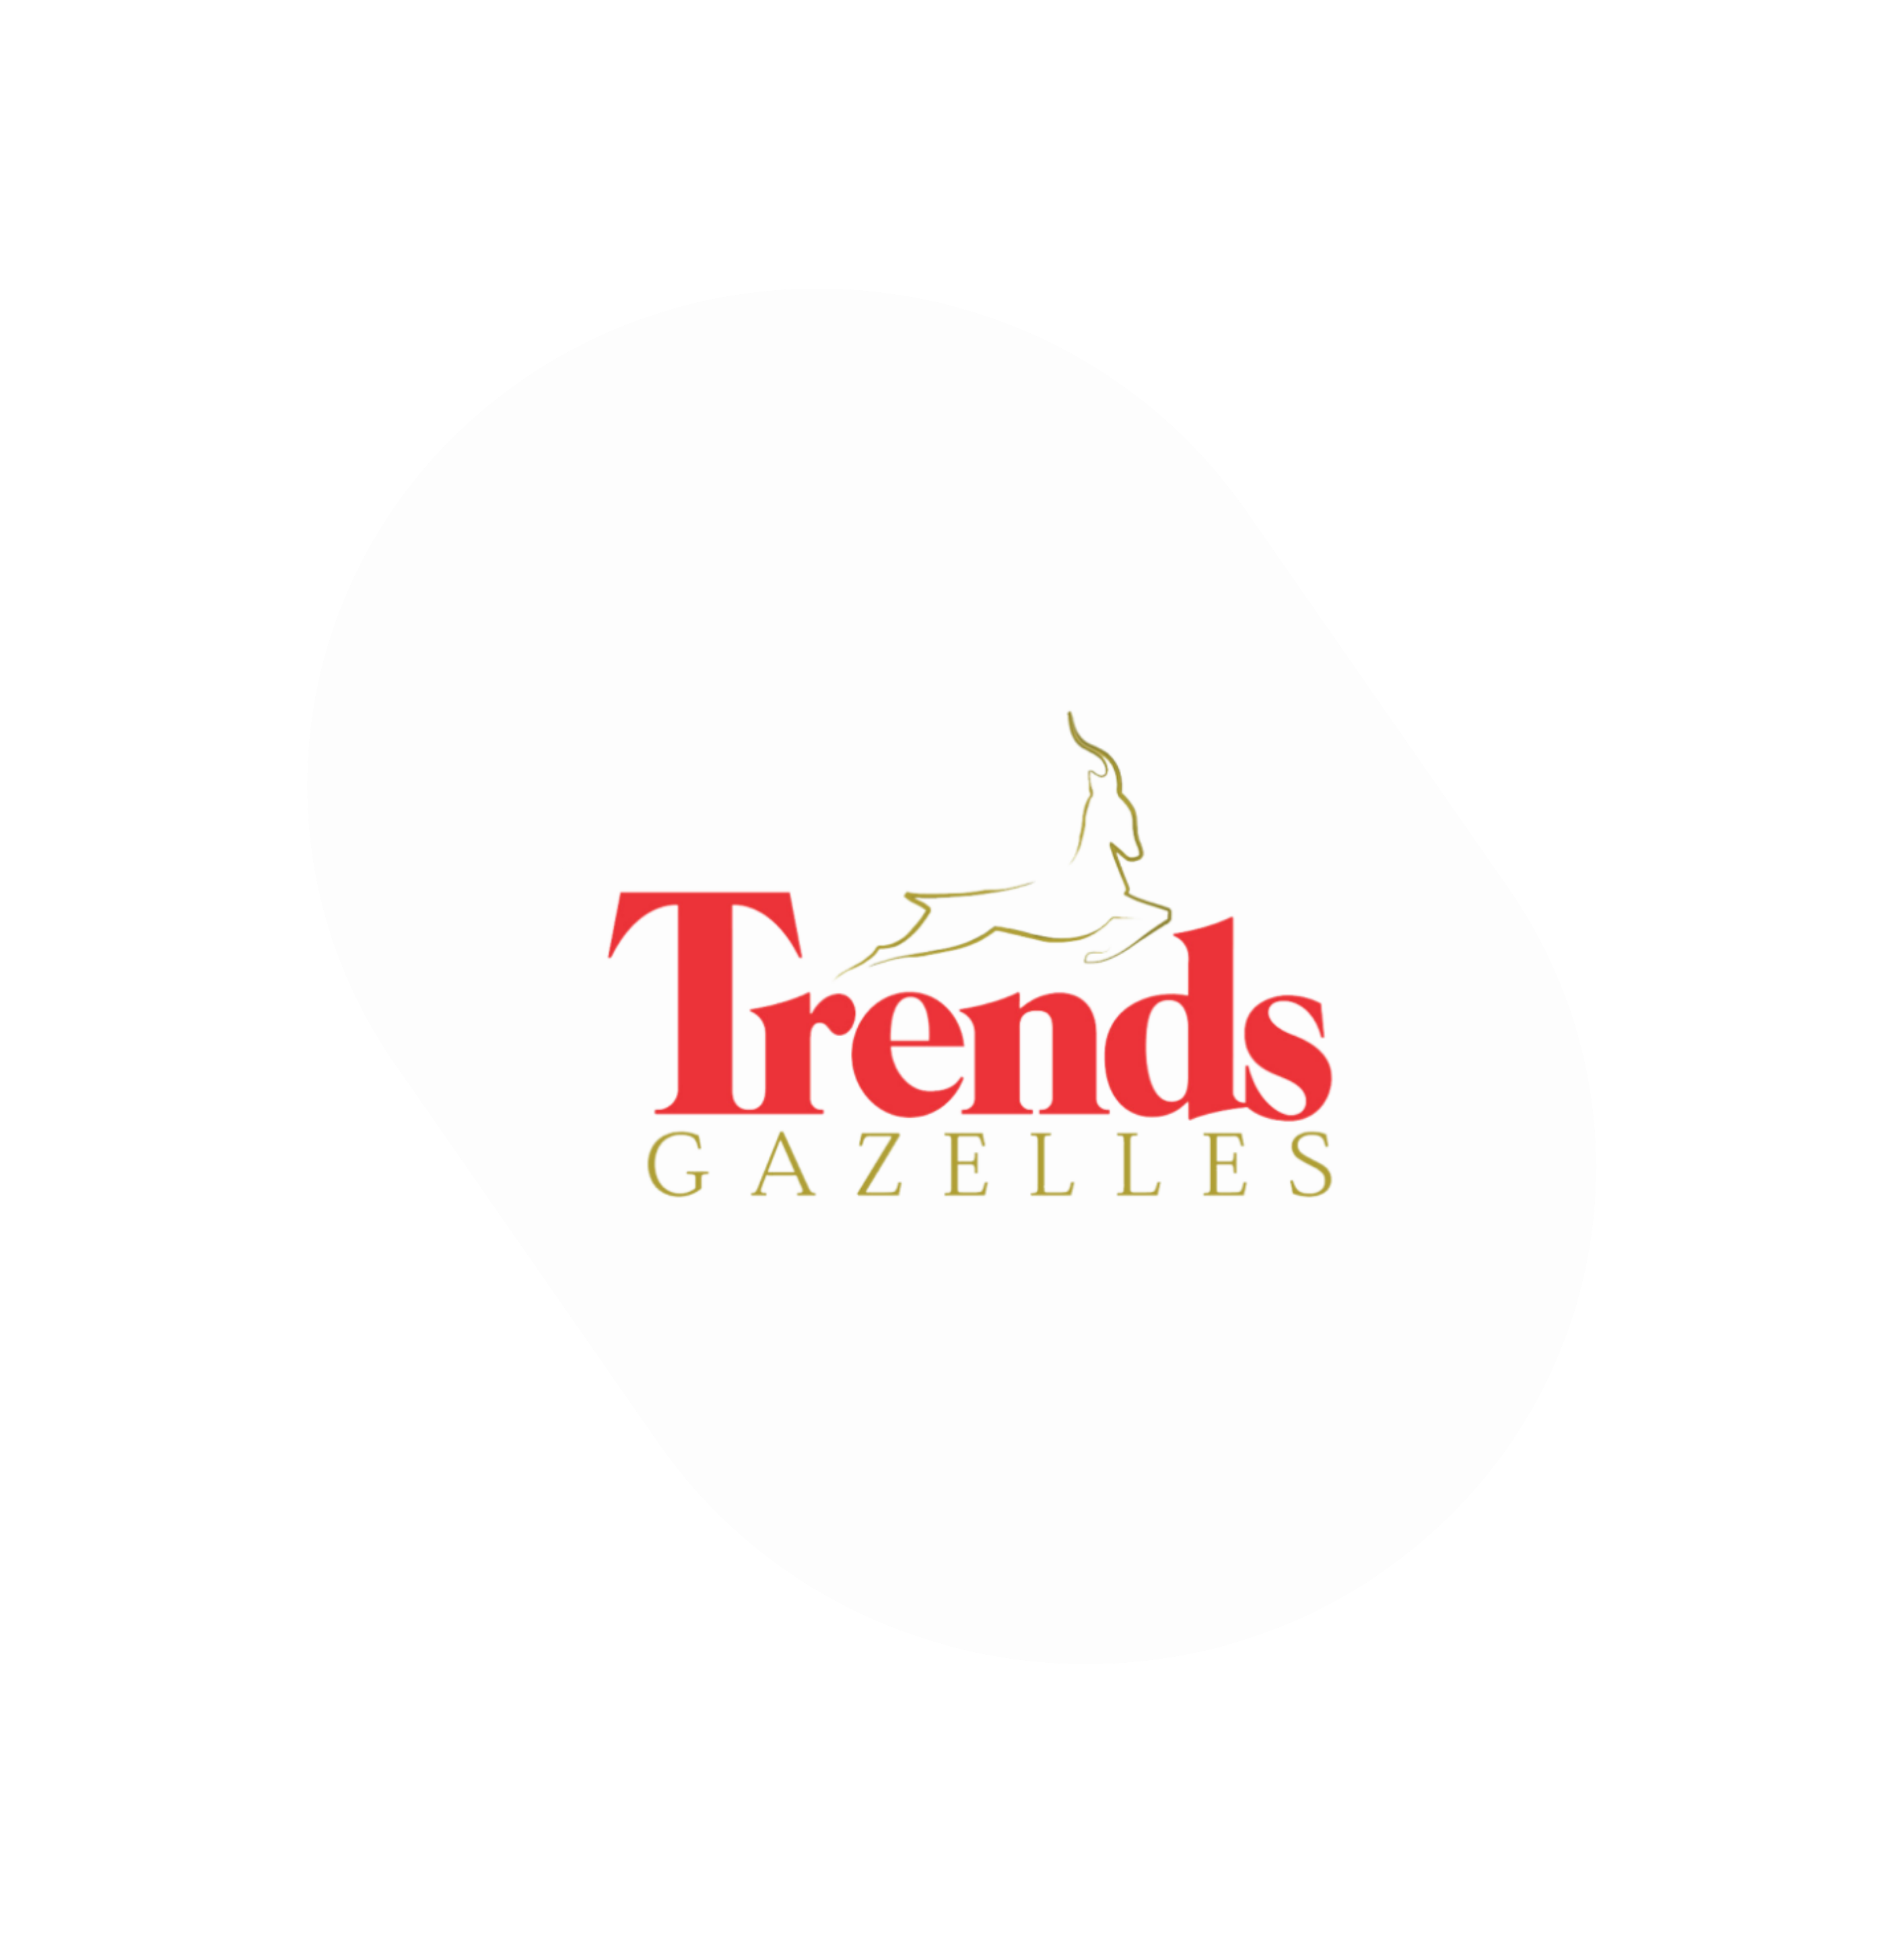  Trends Gazelle 2020